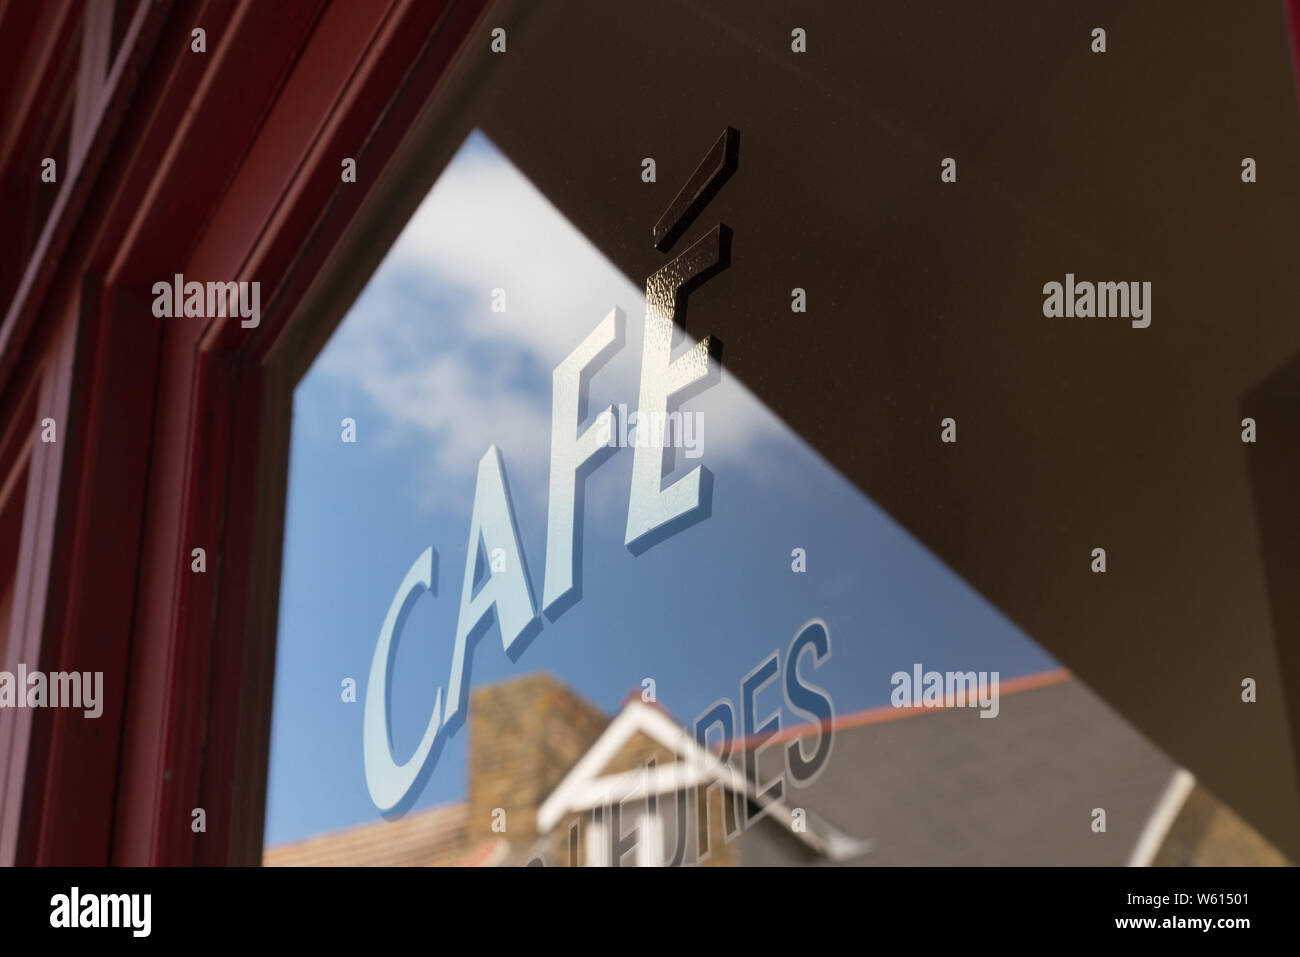 cafe rouge window signage Stock Photo